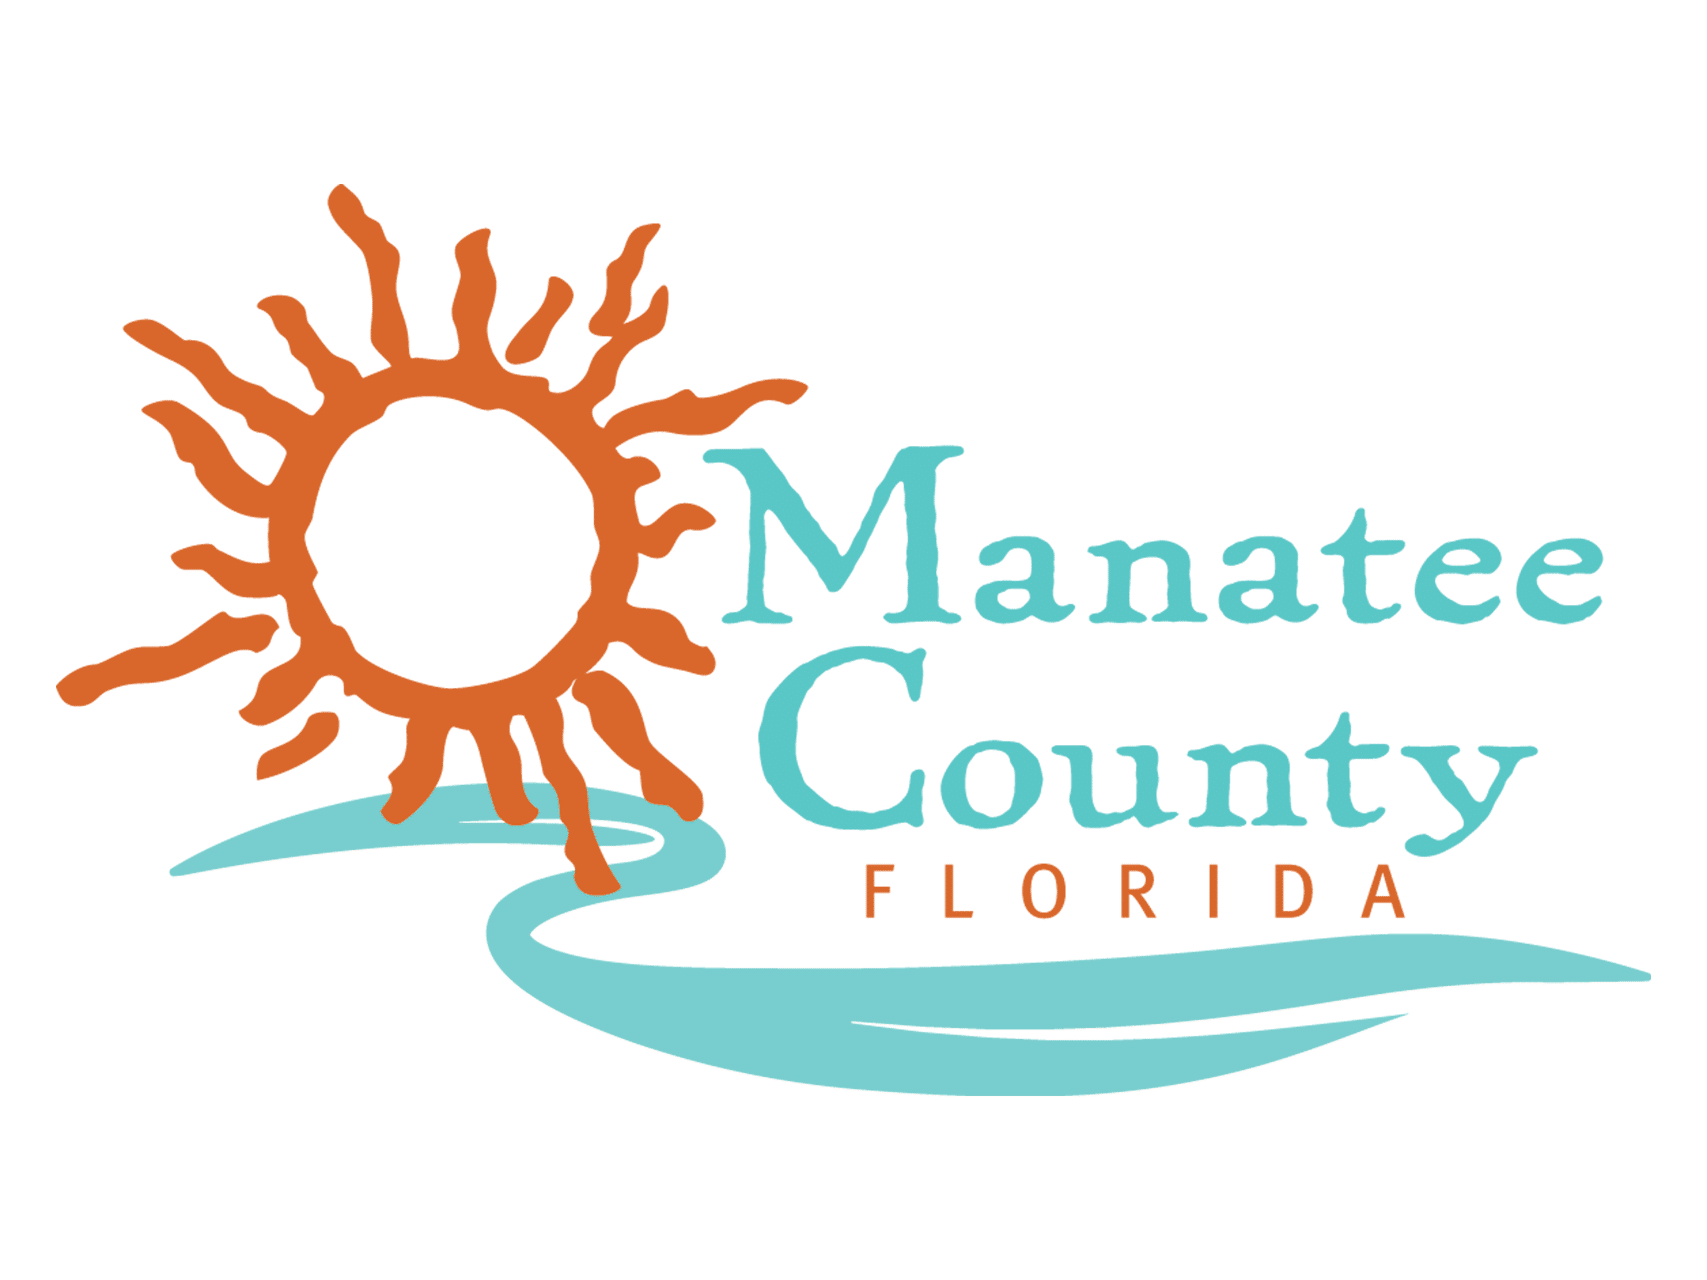 COMANCO Awarded Manatee County Landfill